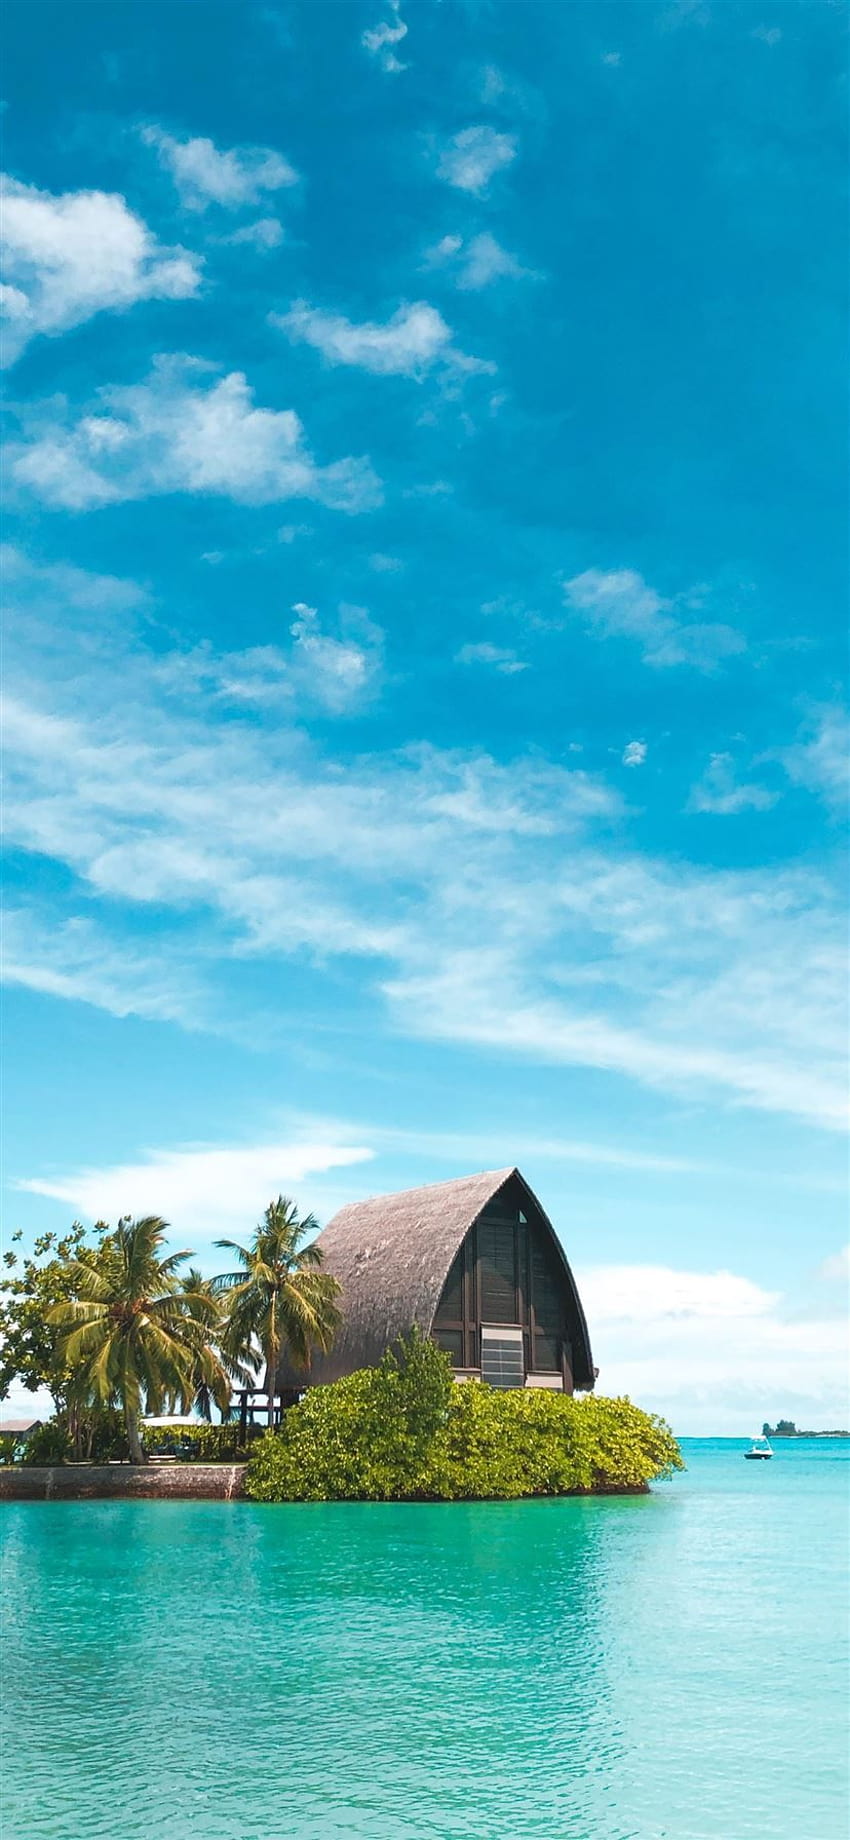 gubuk coklat dekat pohon kelapa di bawah langit biru iPhone 11 wallpaper ponsel HD